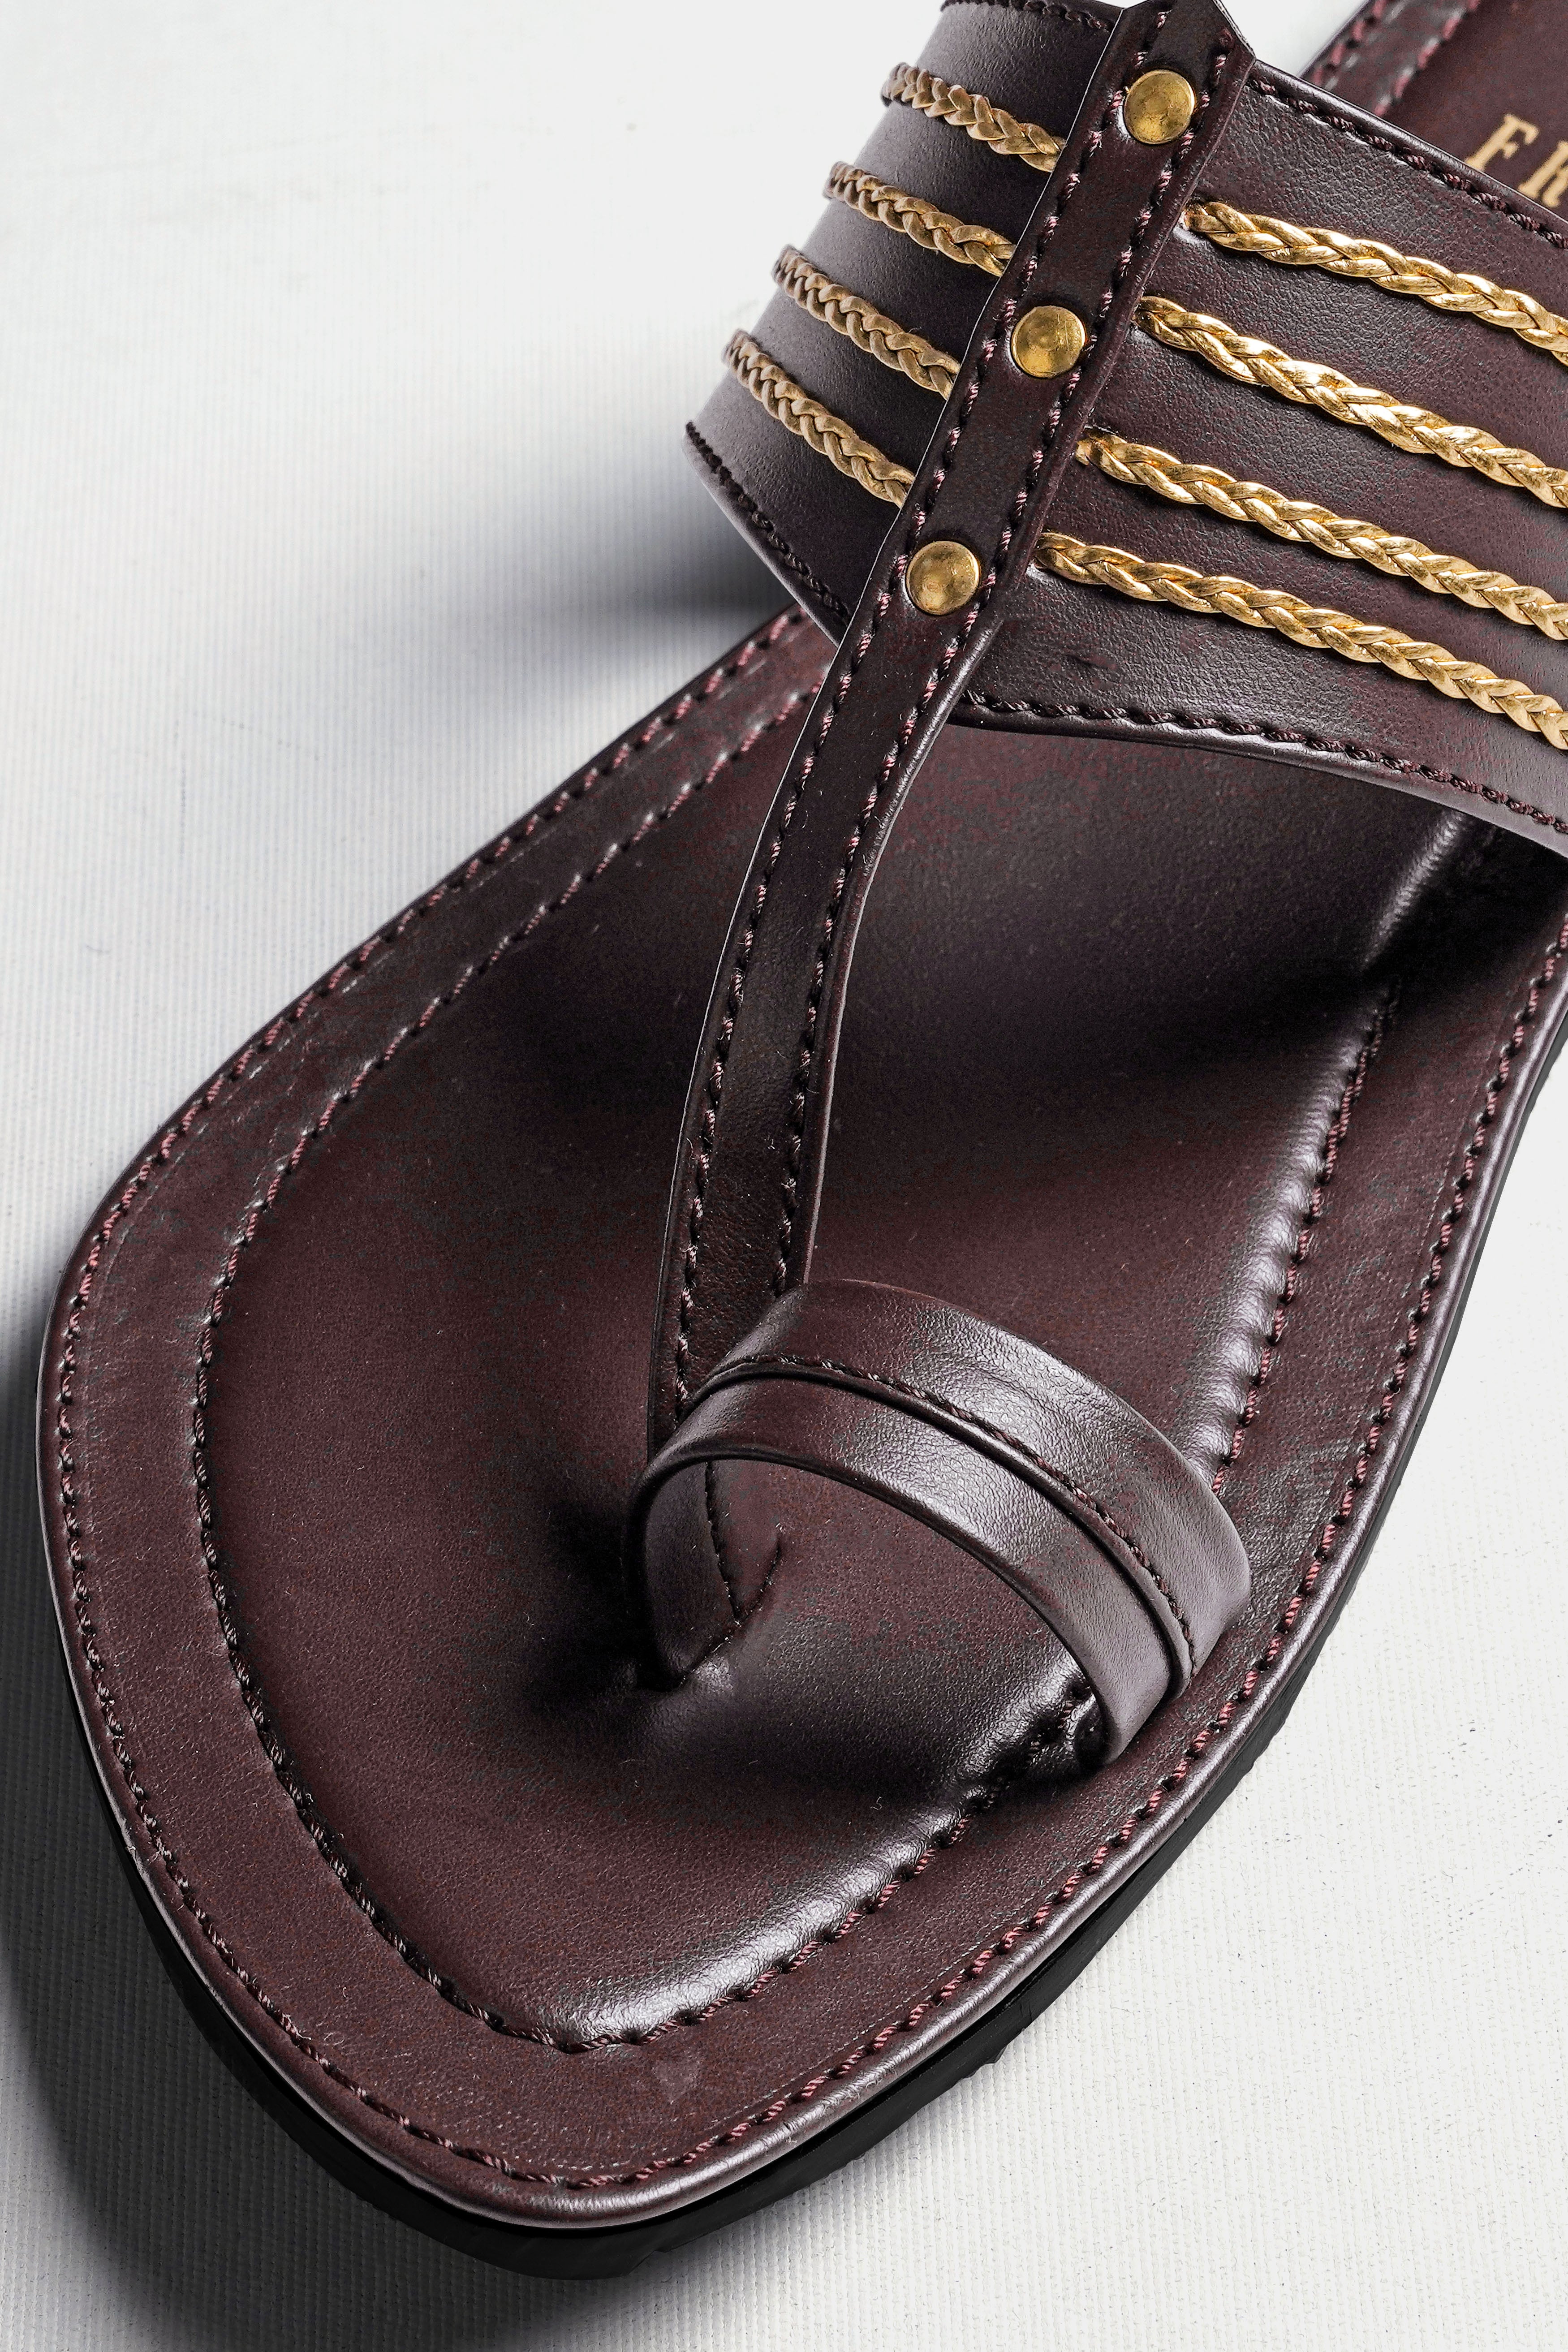 Dark Brown with Golden Stitched Vegan Leather Kolhapuri Sandal FT155-6, FT155-7, FT155-8, FT155-9, FT155-10, FT155-11